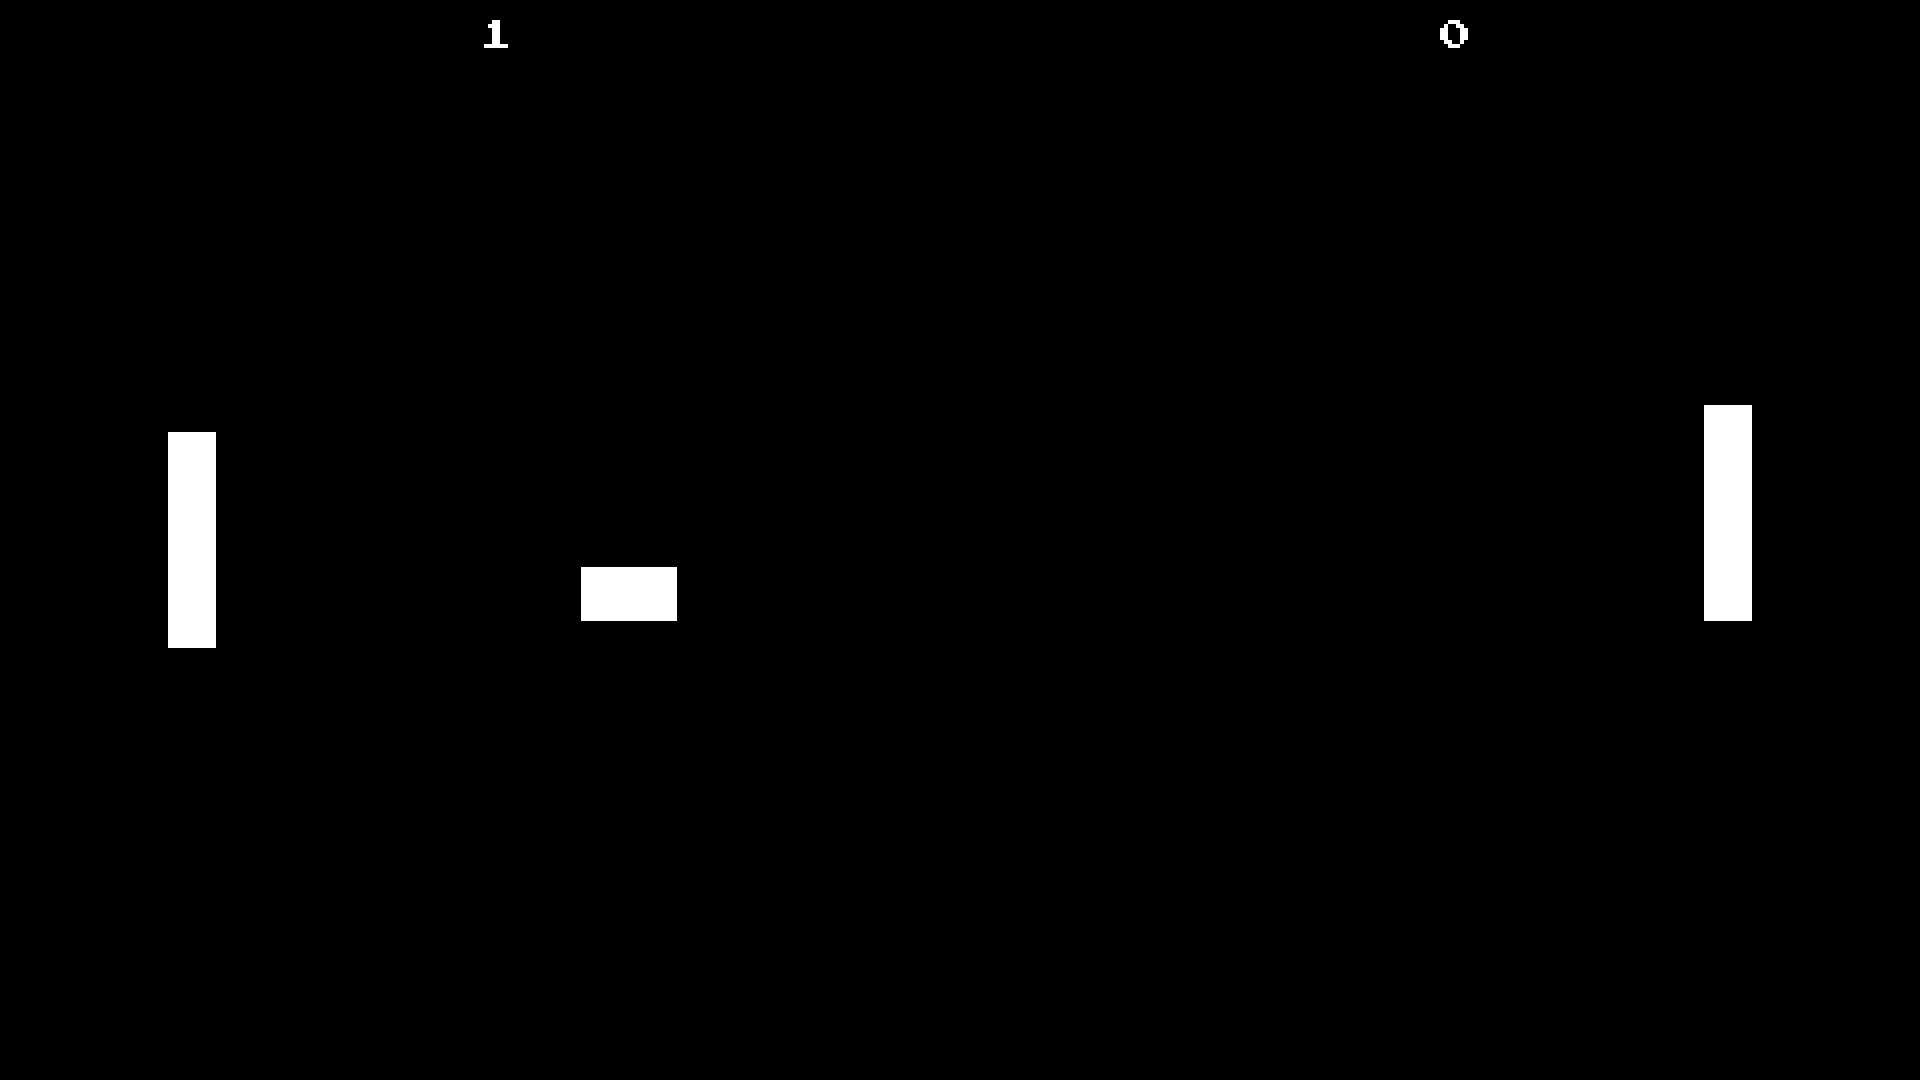 A screenshot of pong